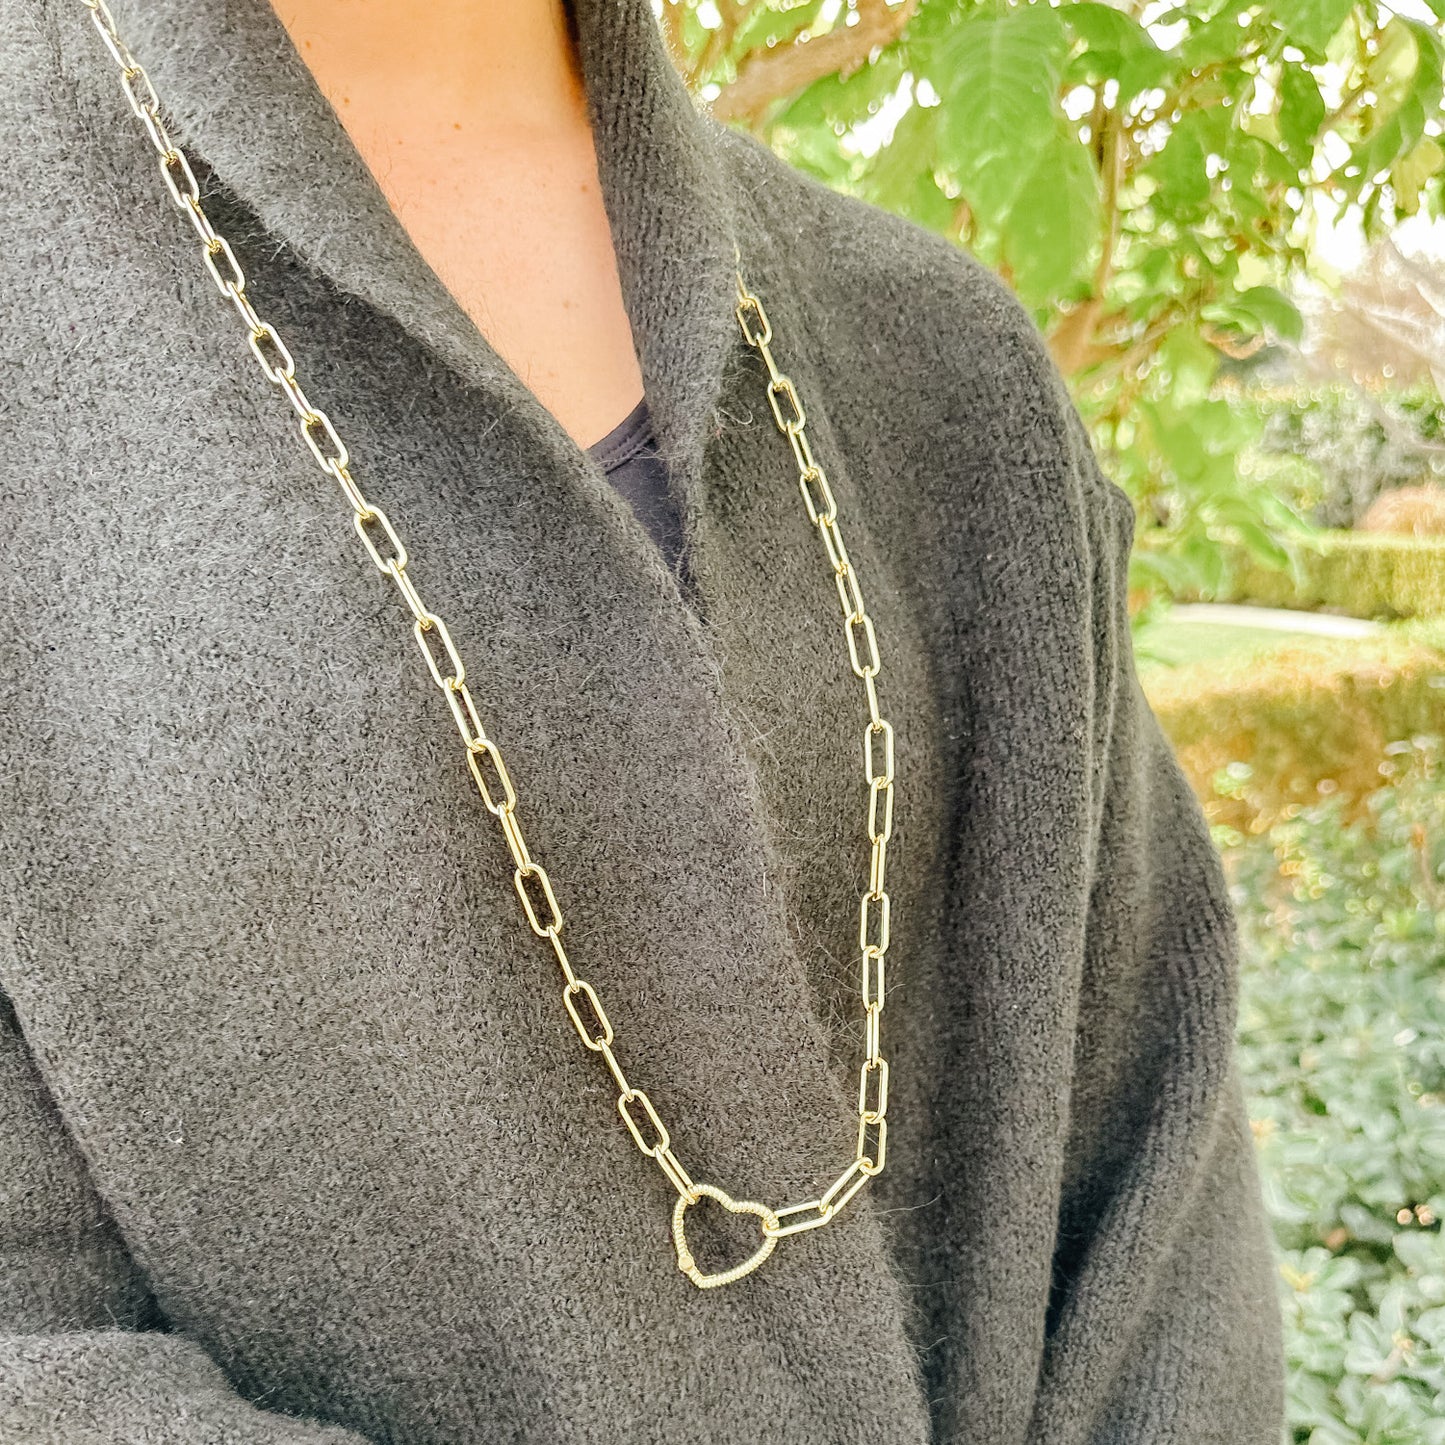 Gold Filled Lauren Love Link Necklace